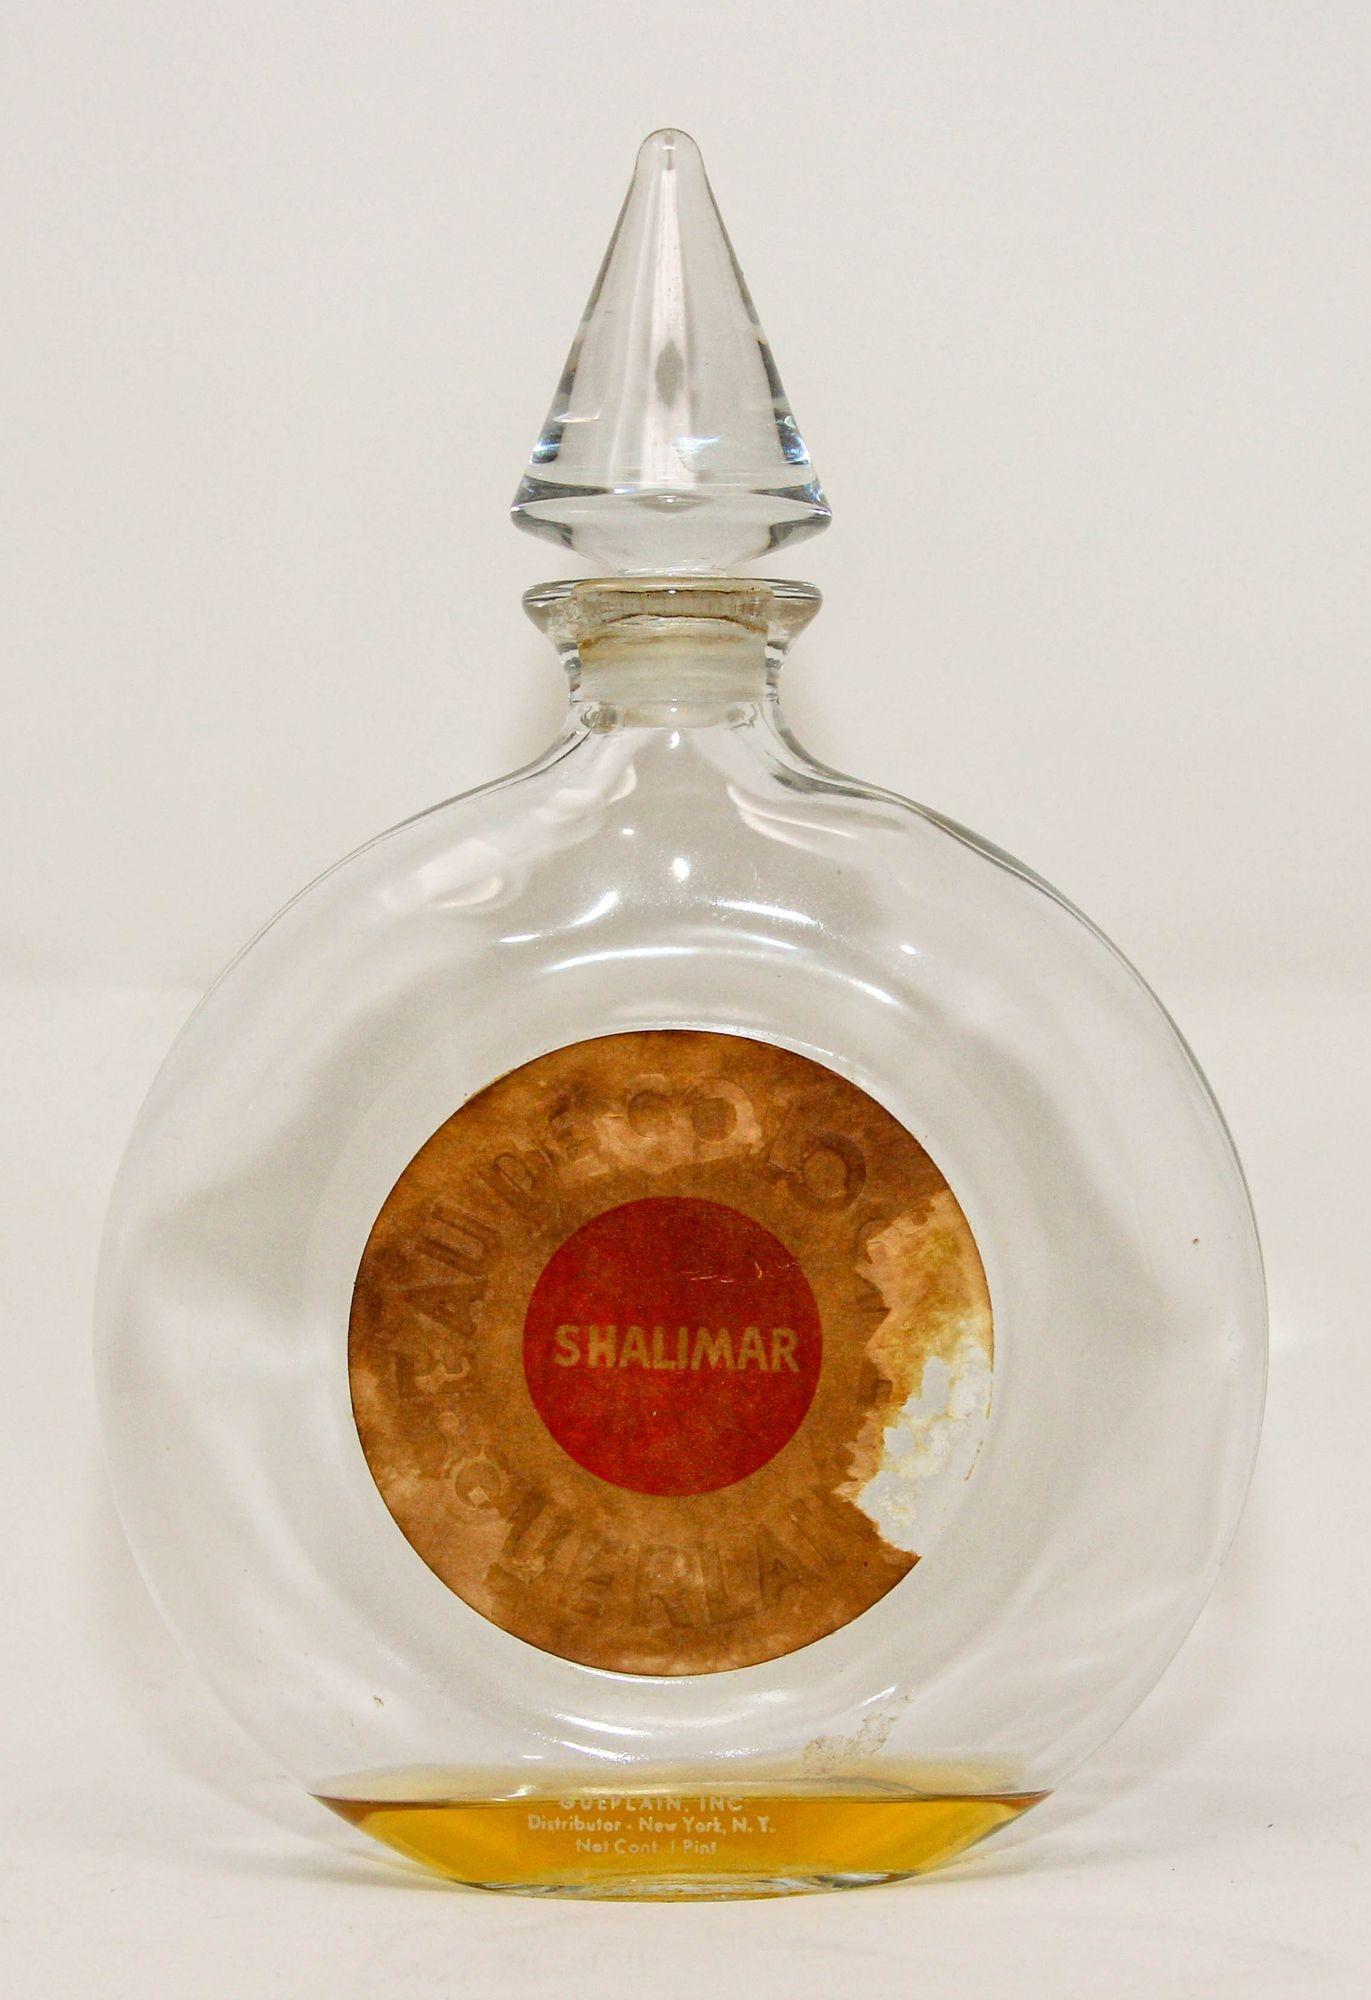 Grand flacon de collection en verre d'eau de cologne Guerlain Shalimar.
Flacon vide en verre de collection du célèbre parfum Shalimar.
Inspiré par l'histoire d'amour passionnée entre un empereur et une princesse indienne, Shalimar, qui signifie